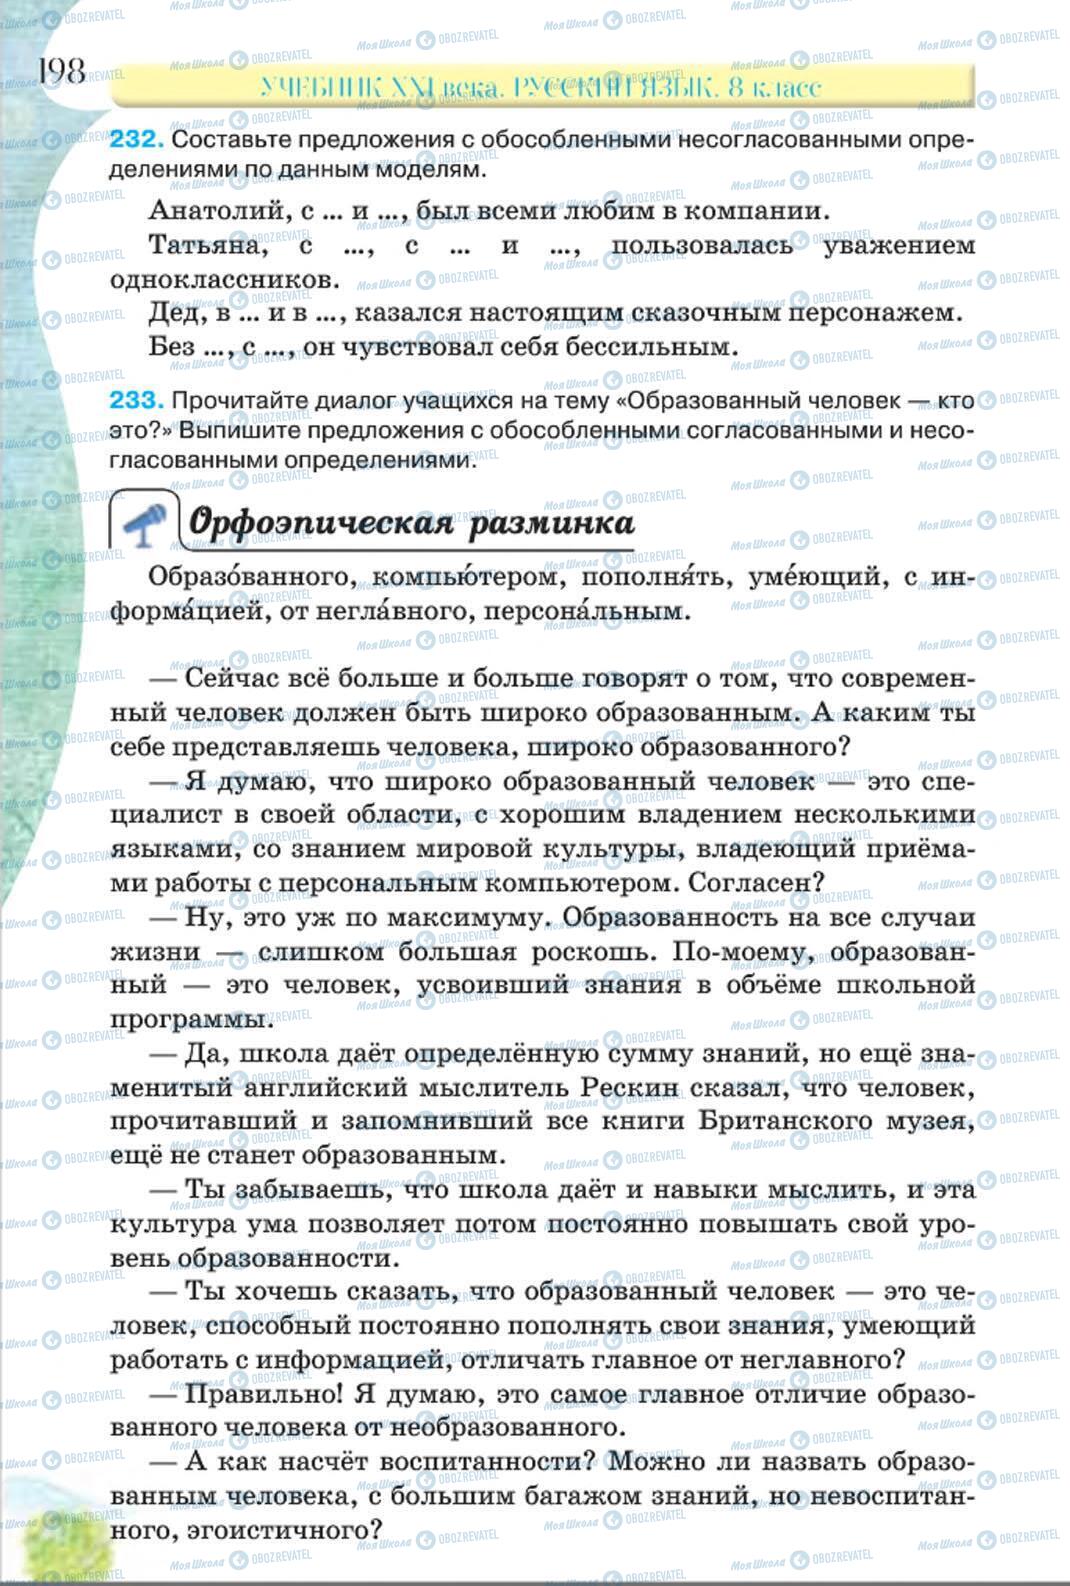 Підручники Російська мова 8 клас сторінка 198